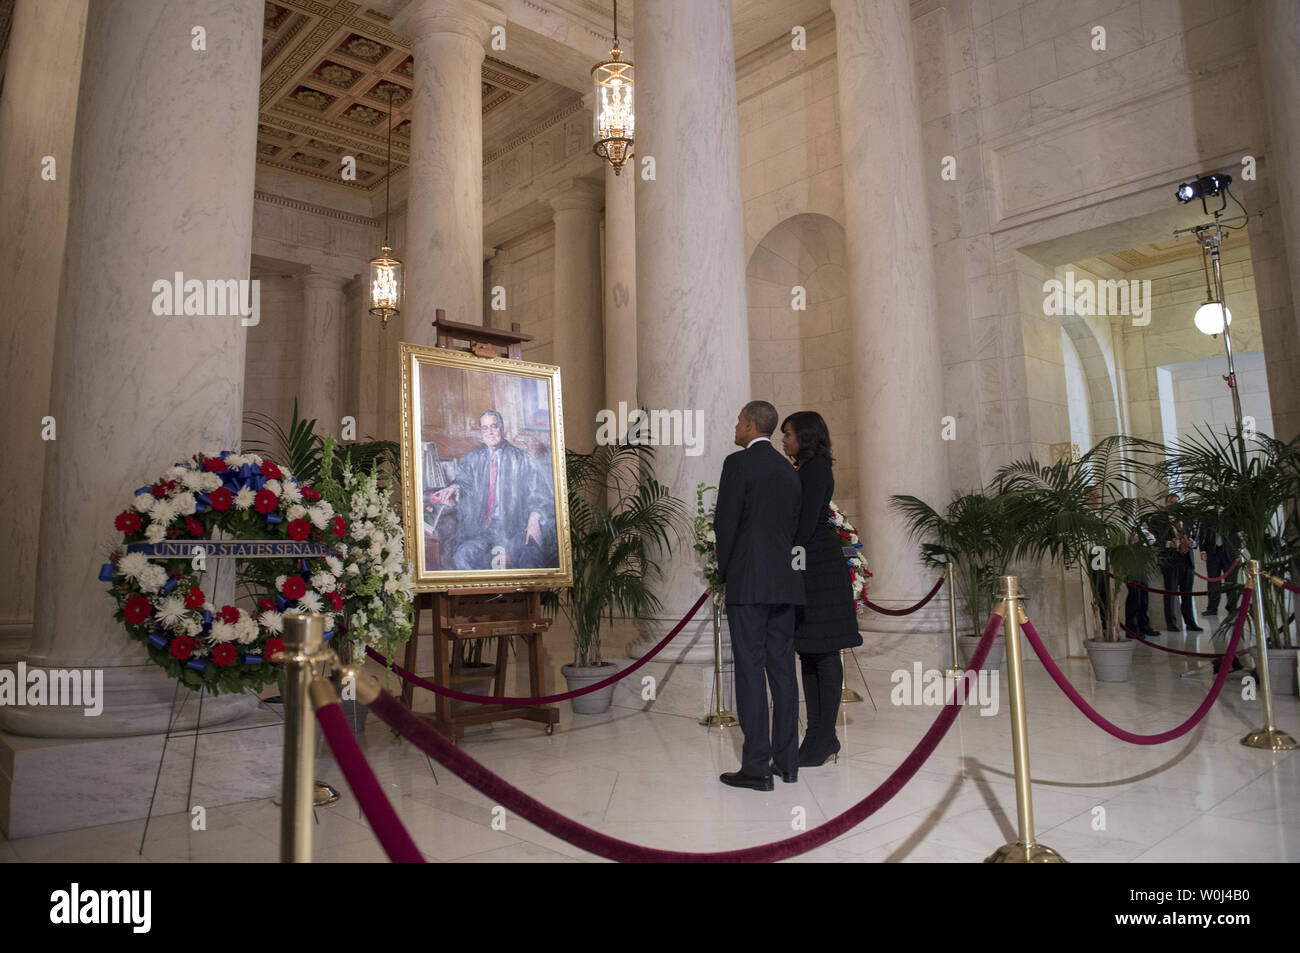 Il presidente Barack Obama e la first lady Michelle guarda un dipinto di U.S. Giudice della Corte suprema Antonin Scalia come essi pagare rispetta la giustizia come egli si trova a riposo nella grande sala della corte suprema a Washington DC, 19 febbraio 2016. Foto di Molly Riley/UPI Foto Stock